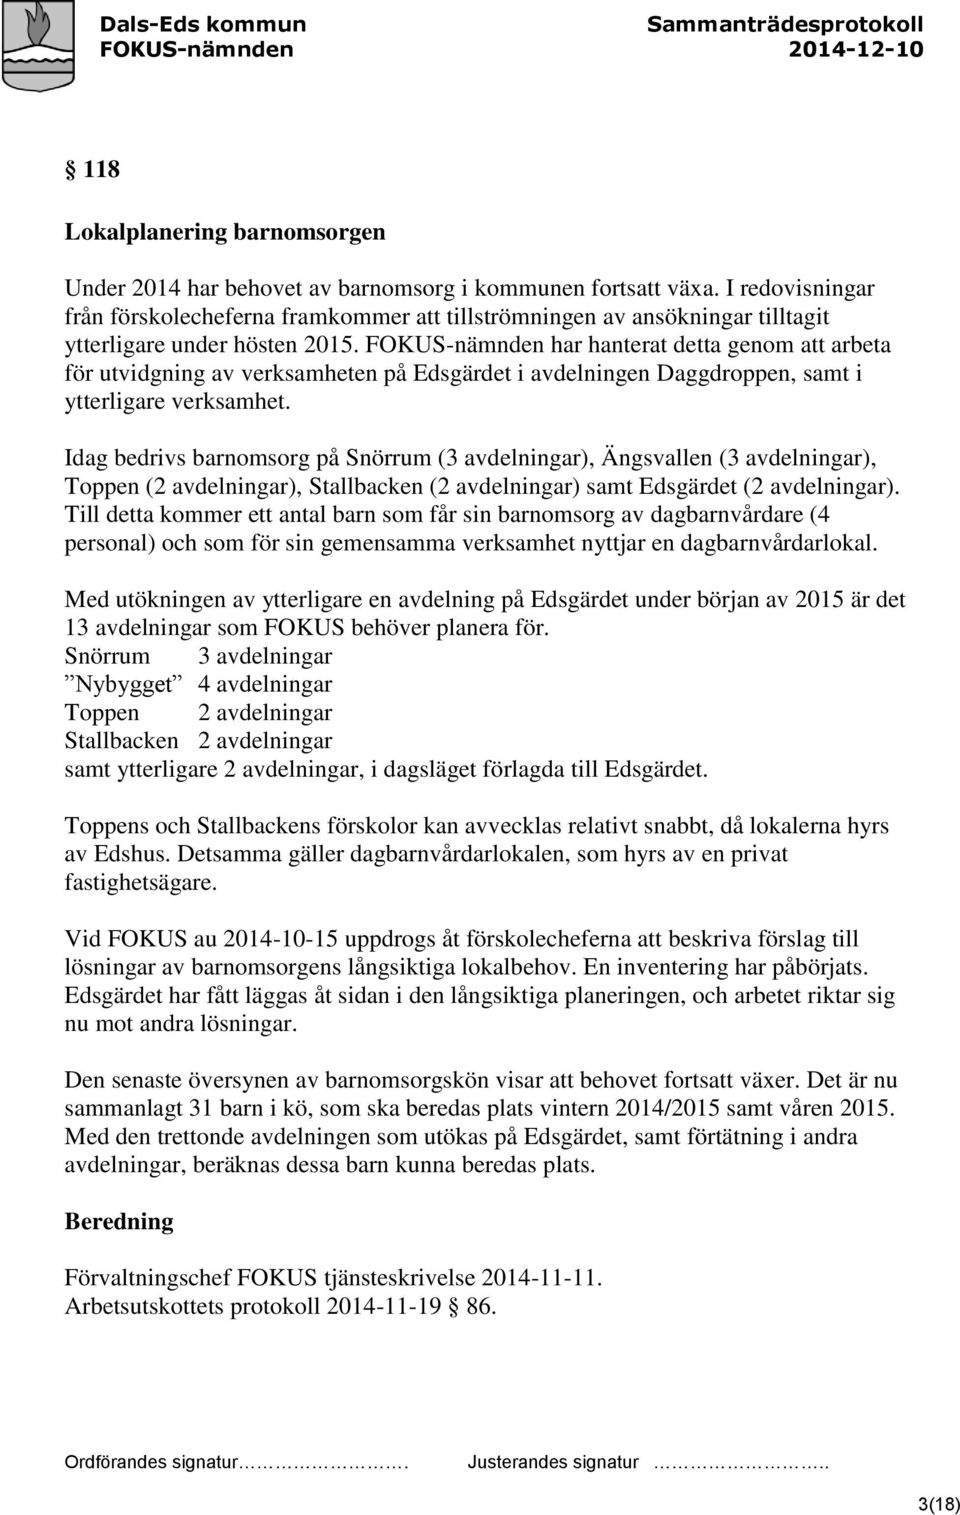 FOKUS-nämnden har hanterat detta genom att arbeta för utvidgning av verksamheten på Edsgärdet i avdelningen Daggdroppen, samt i ytterligare verksamhet.